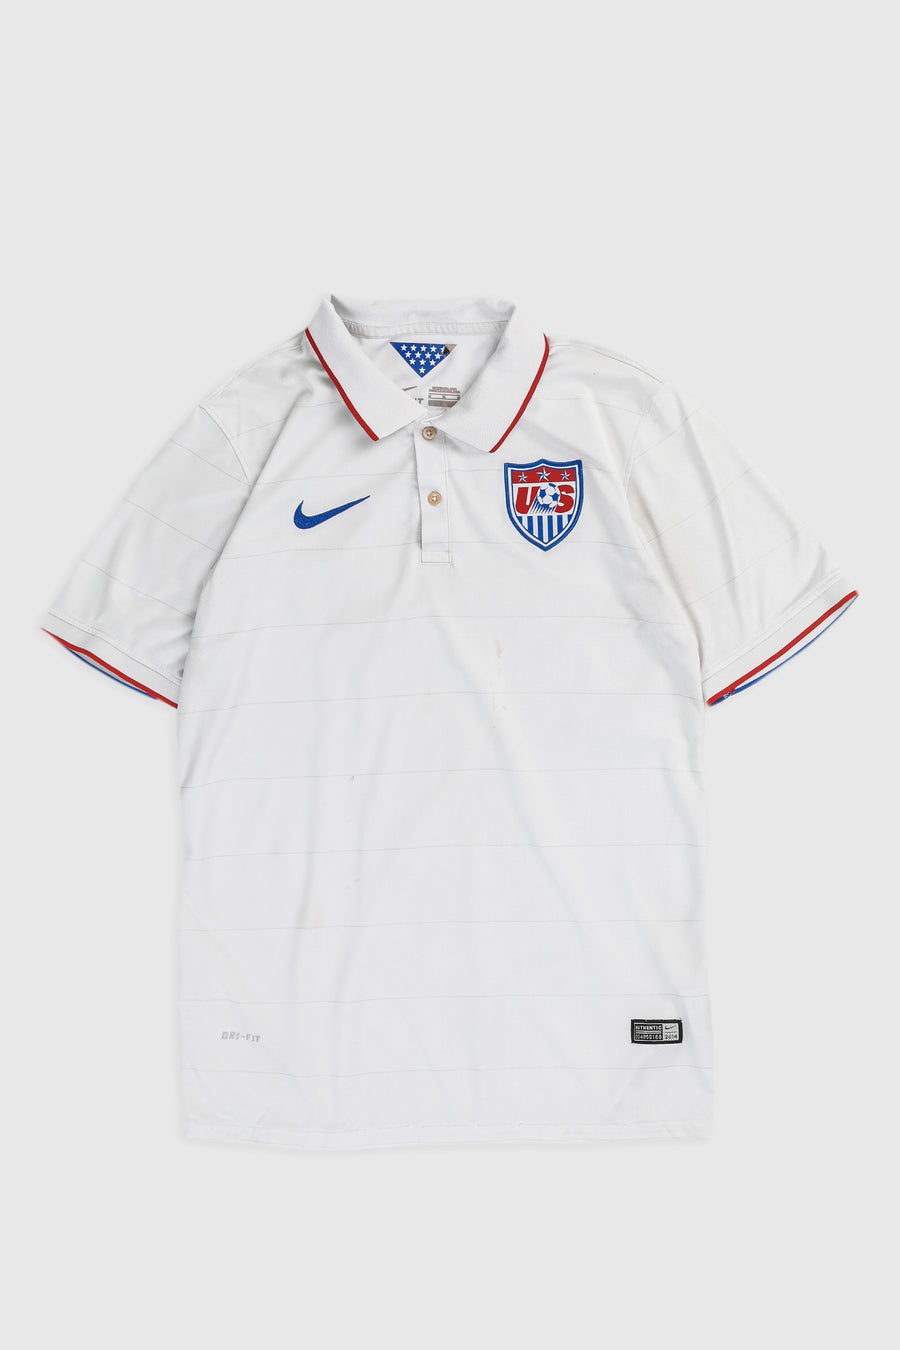 Vintage USA Soccer Jersey - M